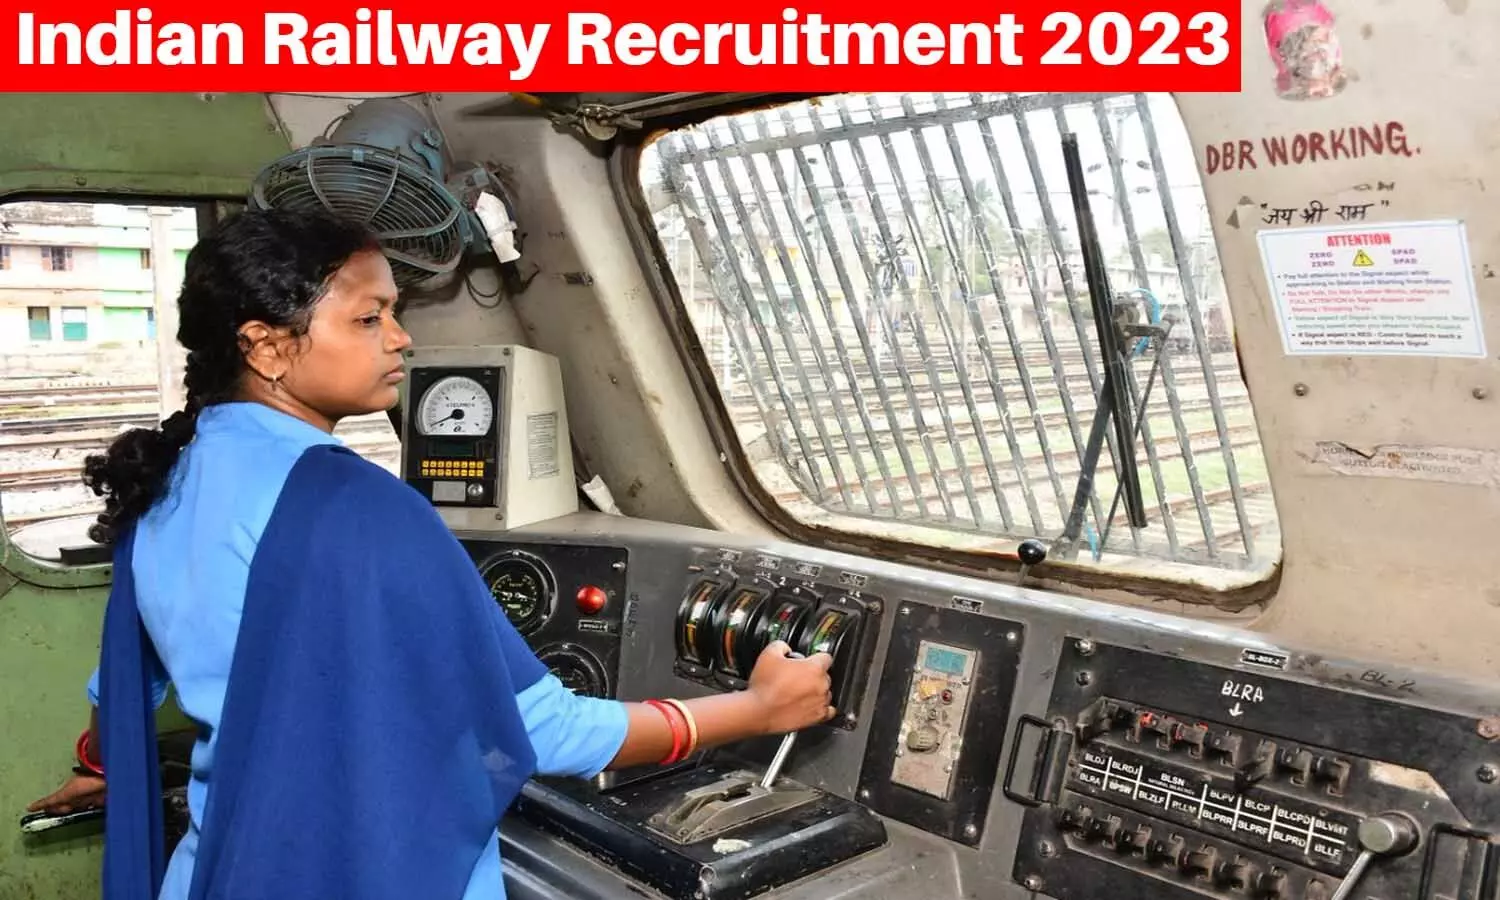 Indian Railway Recruitment 2023: इंडियन रेलवे में विभिन्न पदों के लिए निकली वैकेंसी, यह होनी चाहिए क्वालिफिकेशन व एज लिमिट